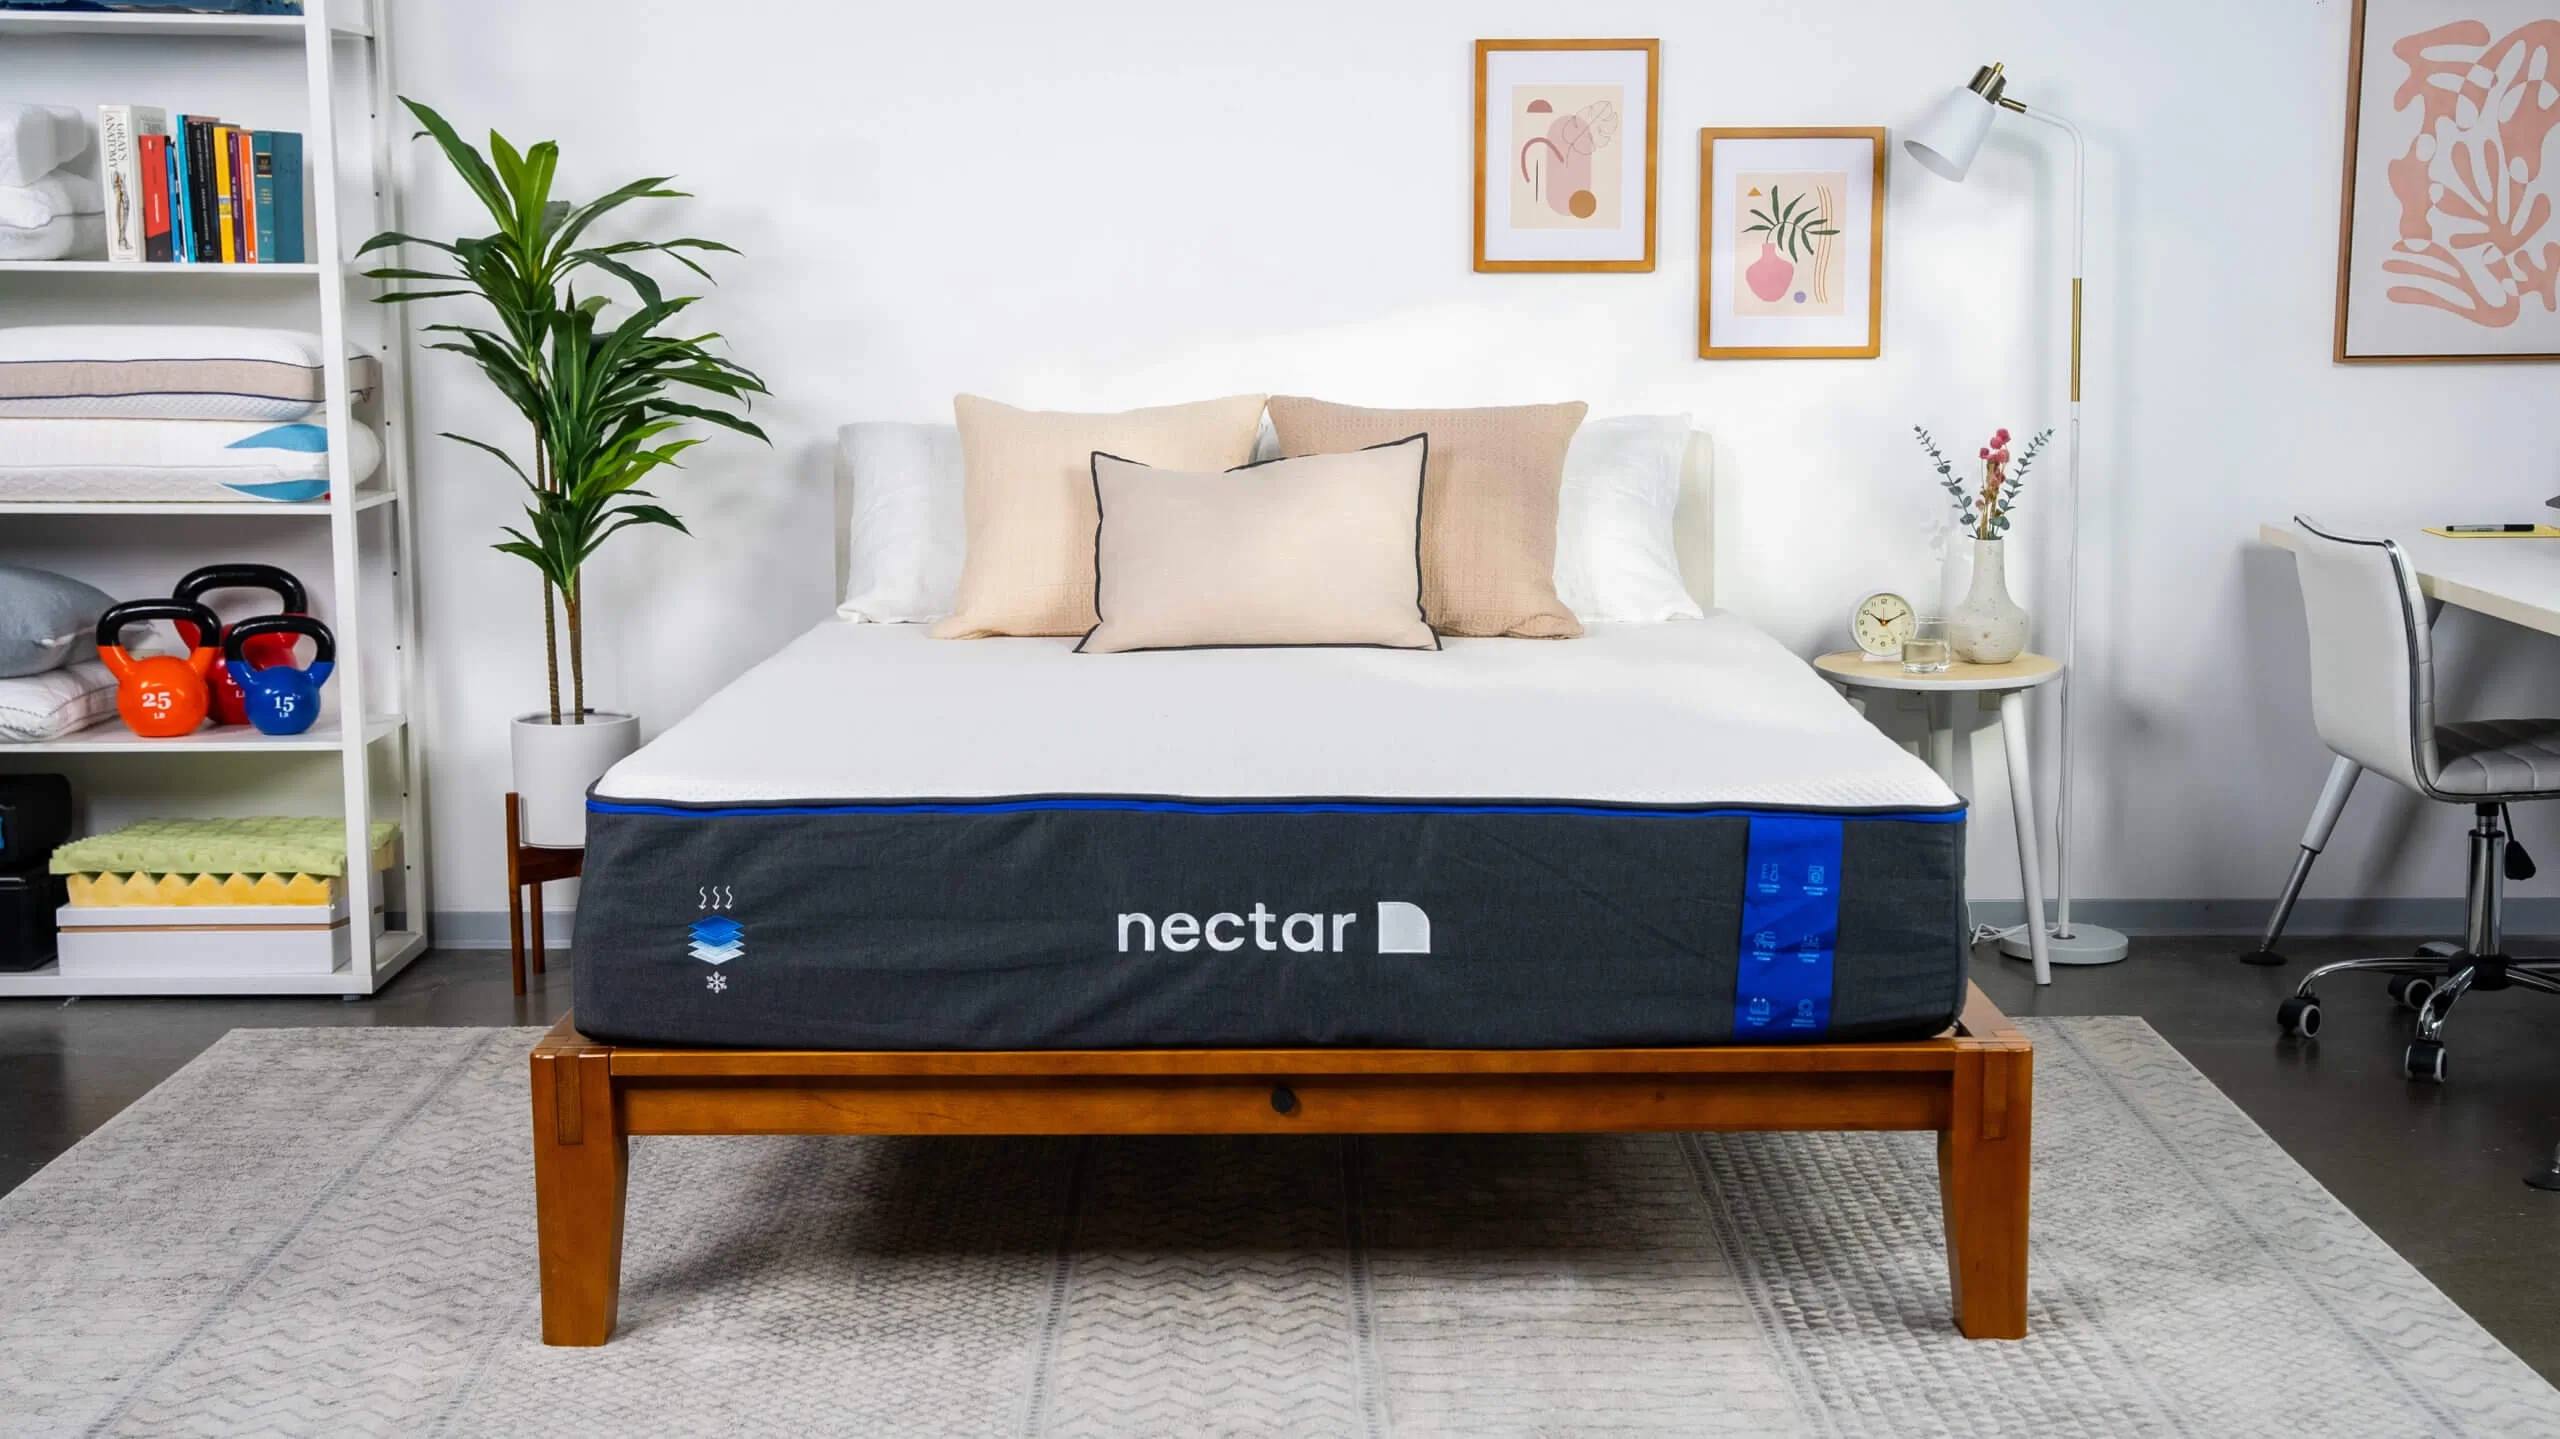 nectar premier mattress on bed